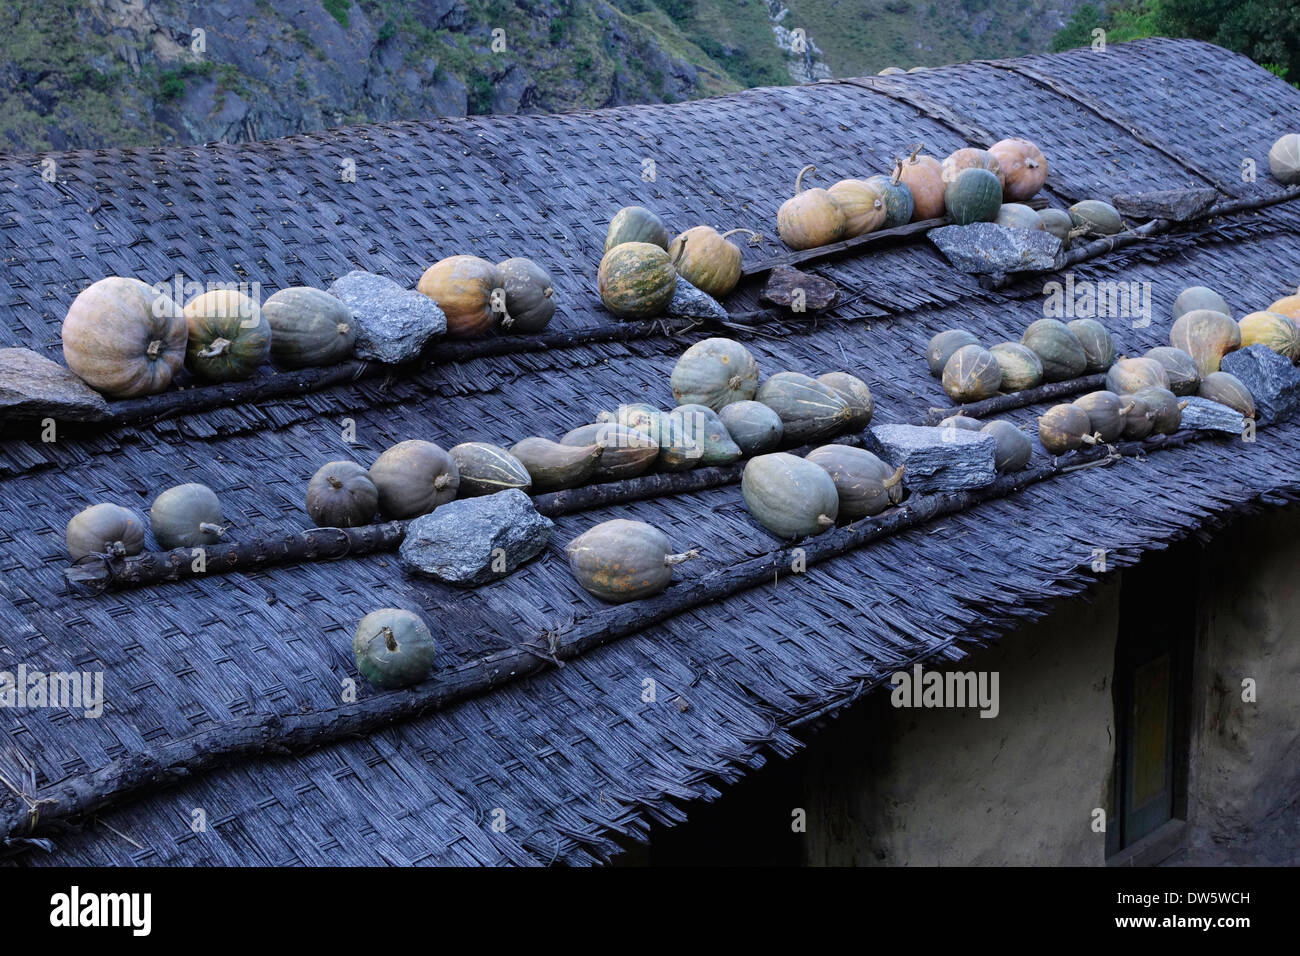 Squash, Heilung auf dem Dach eines Hauses in der Manaslu Region Nepals. Stockfoto